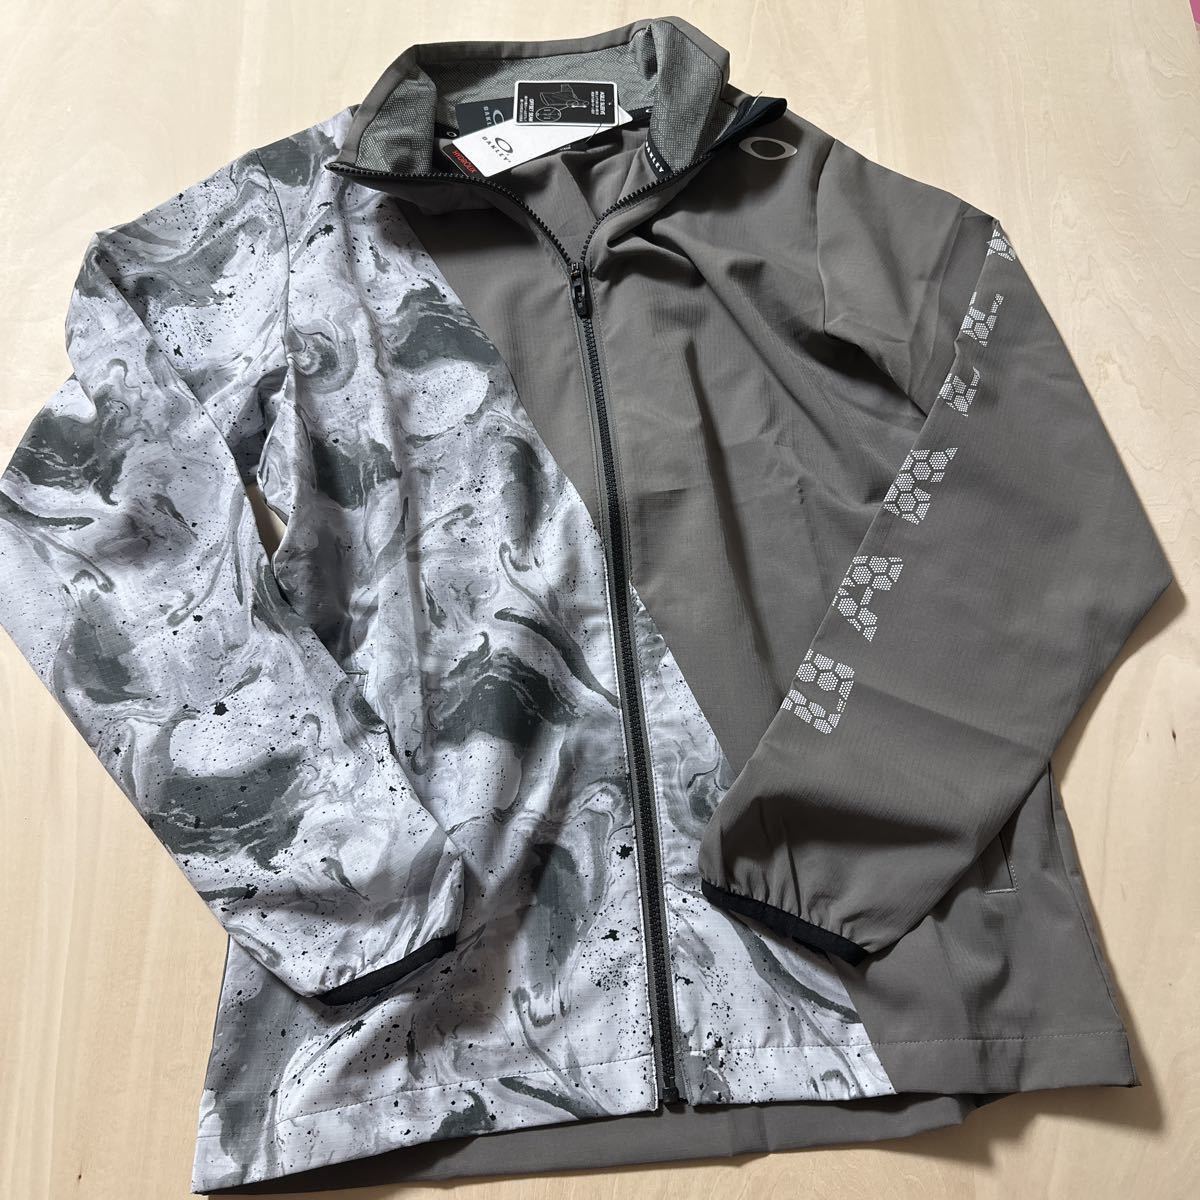 [M] новый товар обычная цена 8800 иен Oacley OAKLEY мужской спорт одежда жакет мужской FOA402910